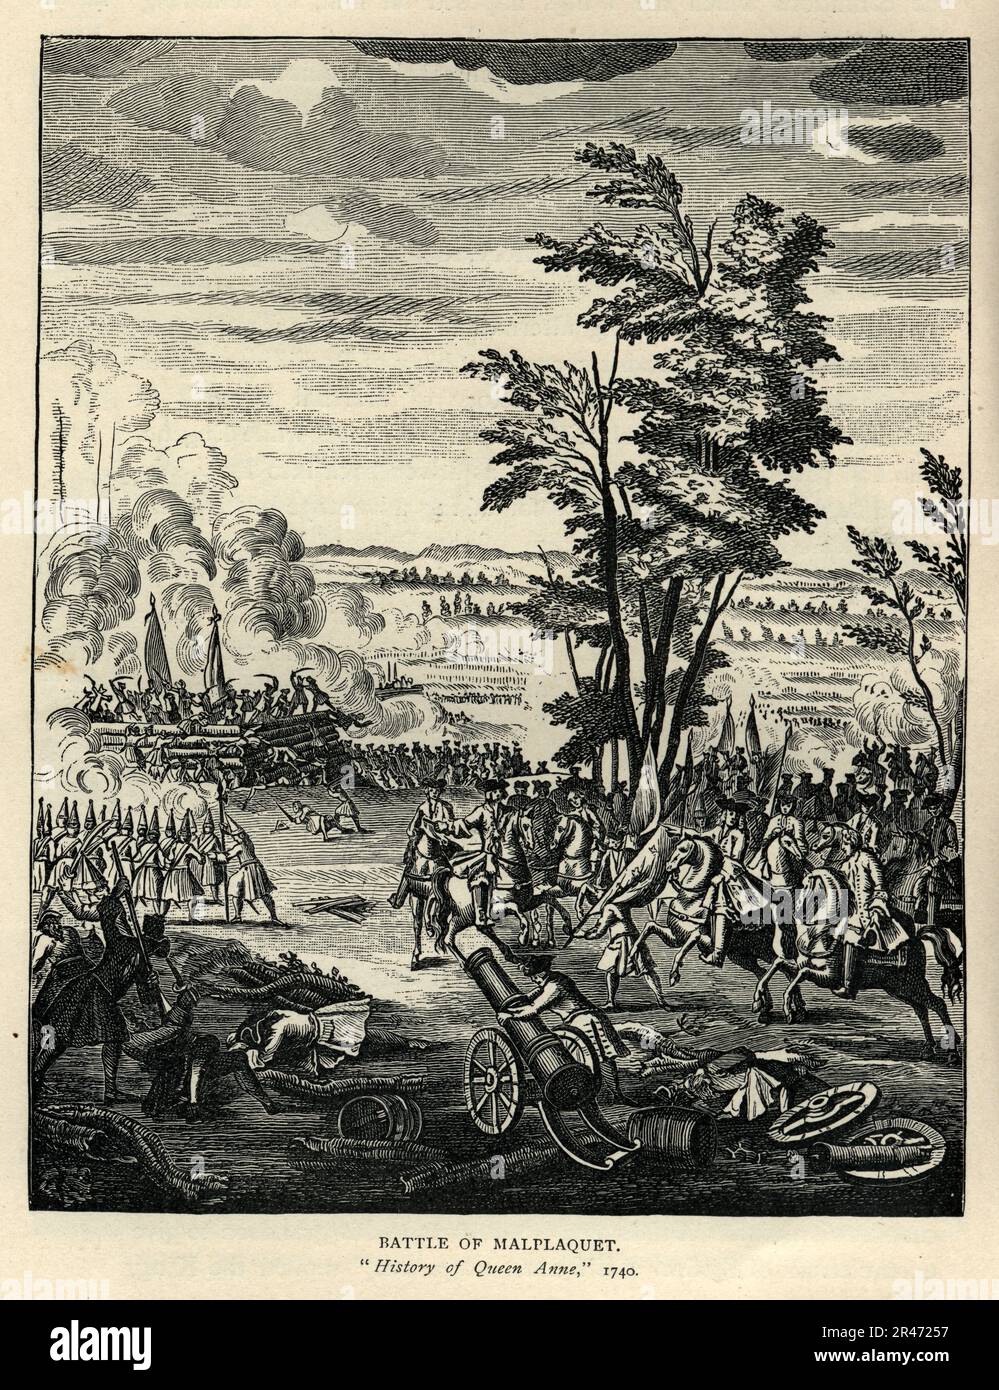 Schlacht von Malplaquet am 11. September 1709 während des spanischen Erbkriegs und wurde zwischen einer französischen Armee unter dem Kommando des Herzog von Villars und einer Truppe der Großen Allianz unter John Churchill, dem Herzog von Marlborough, gekämpft Stockfoto